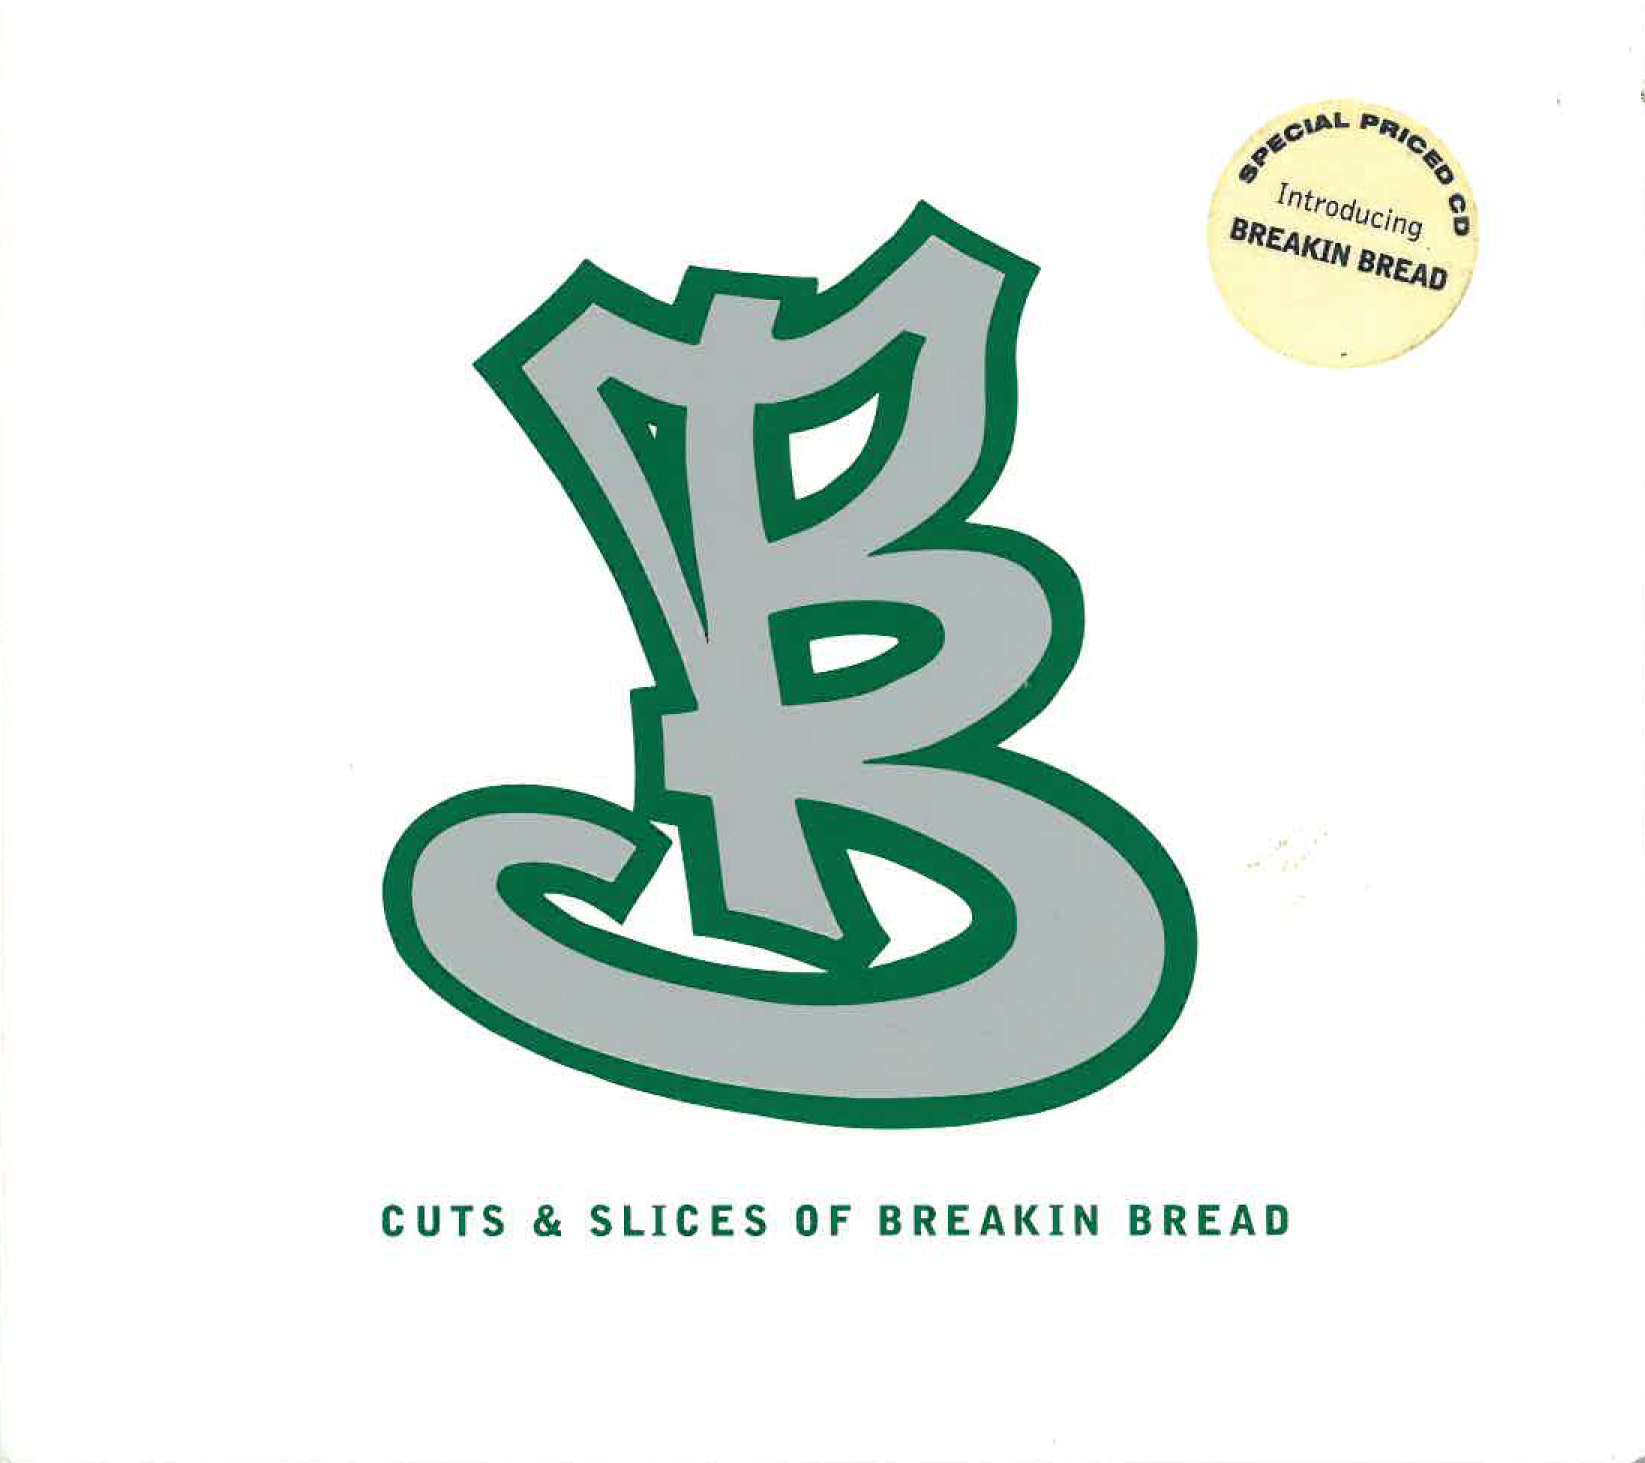 Cuts & Slices of Breakin Bread